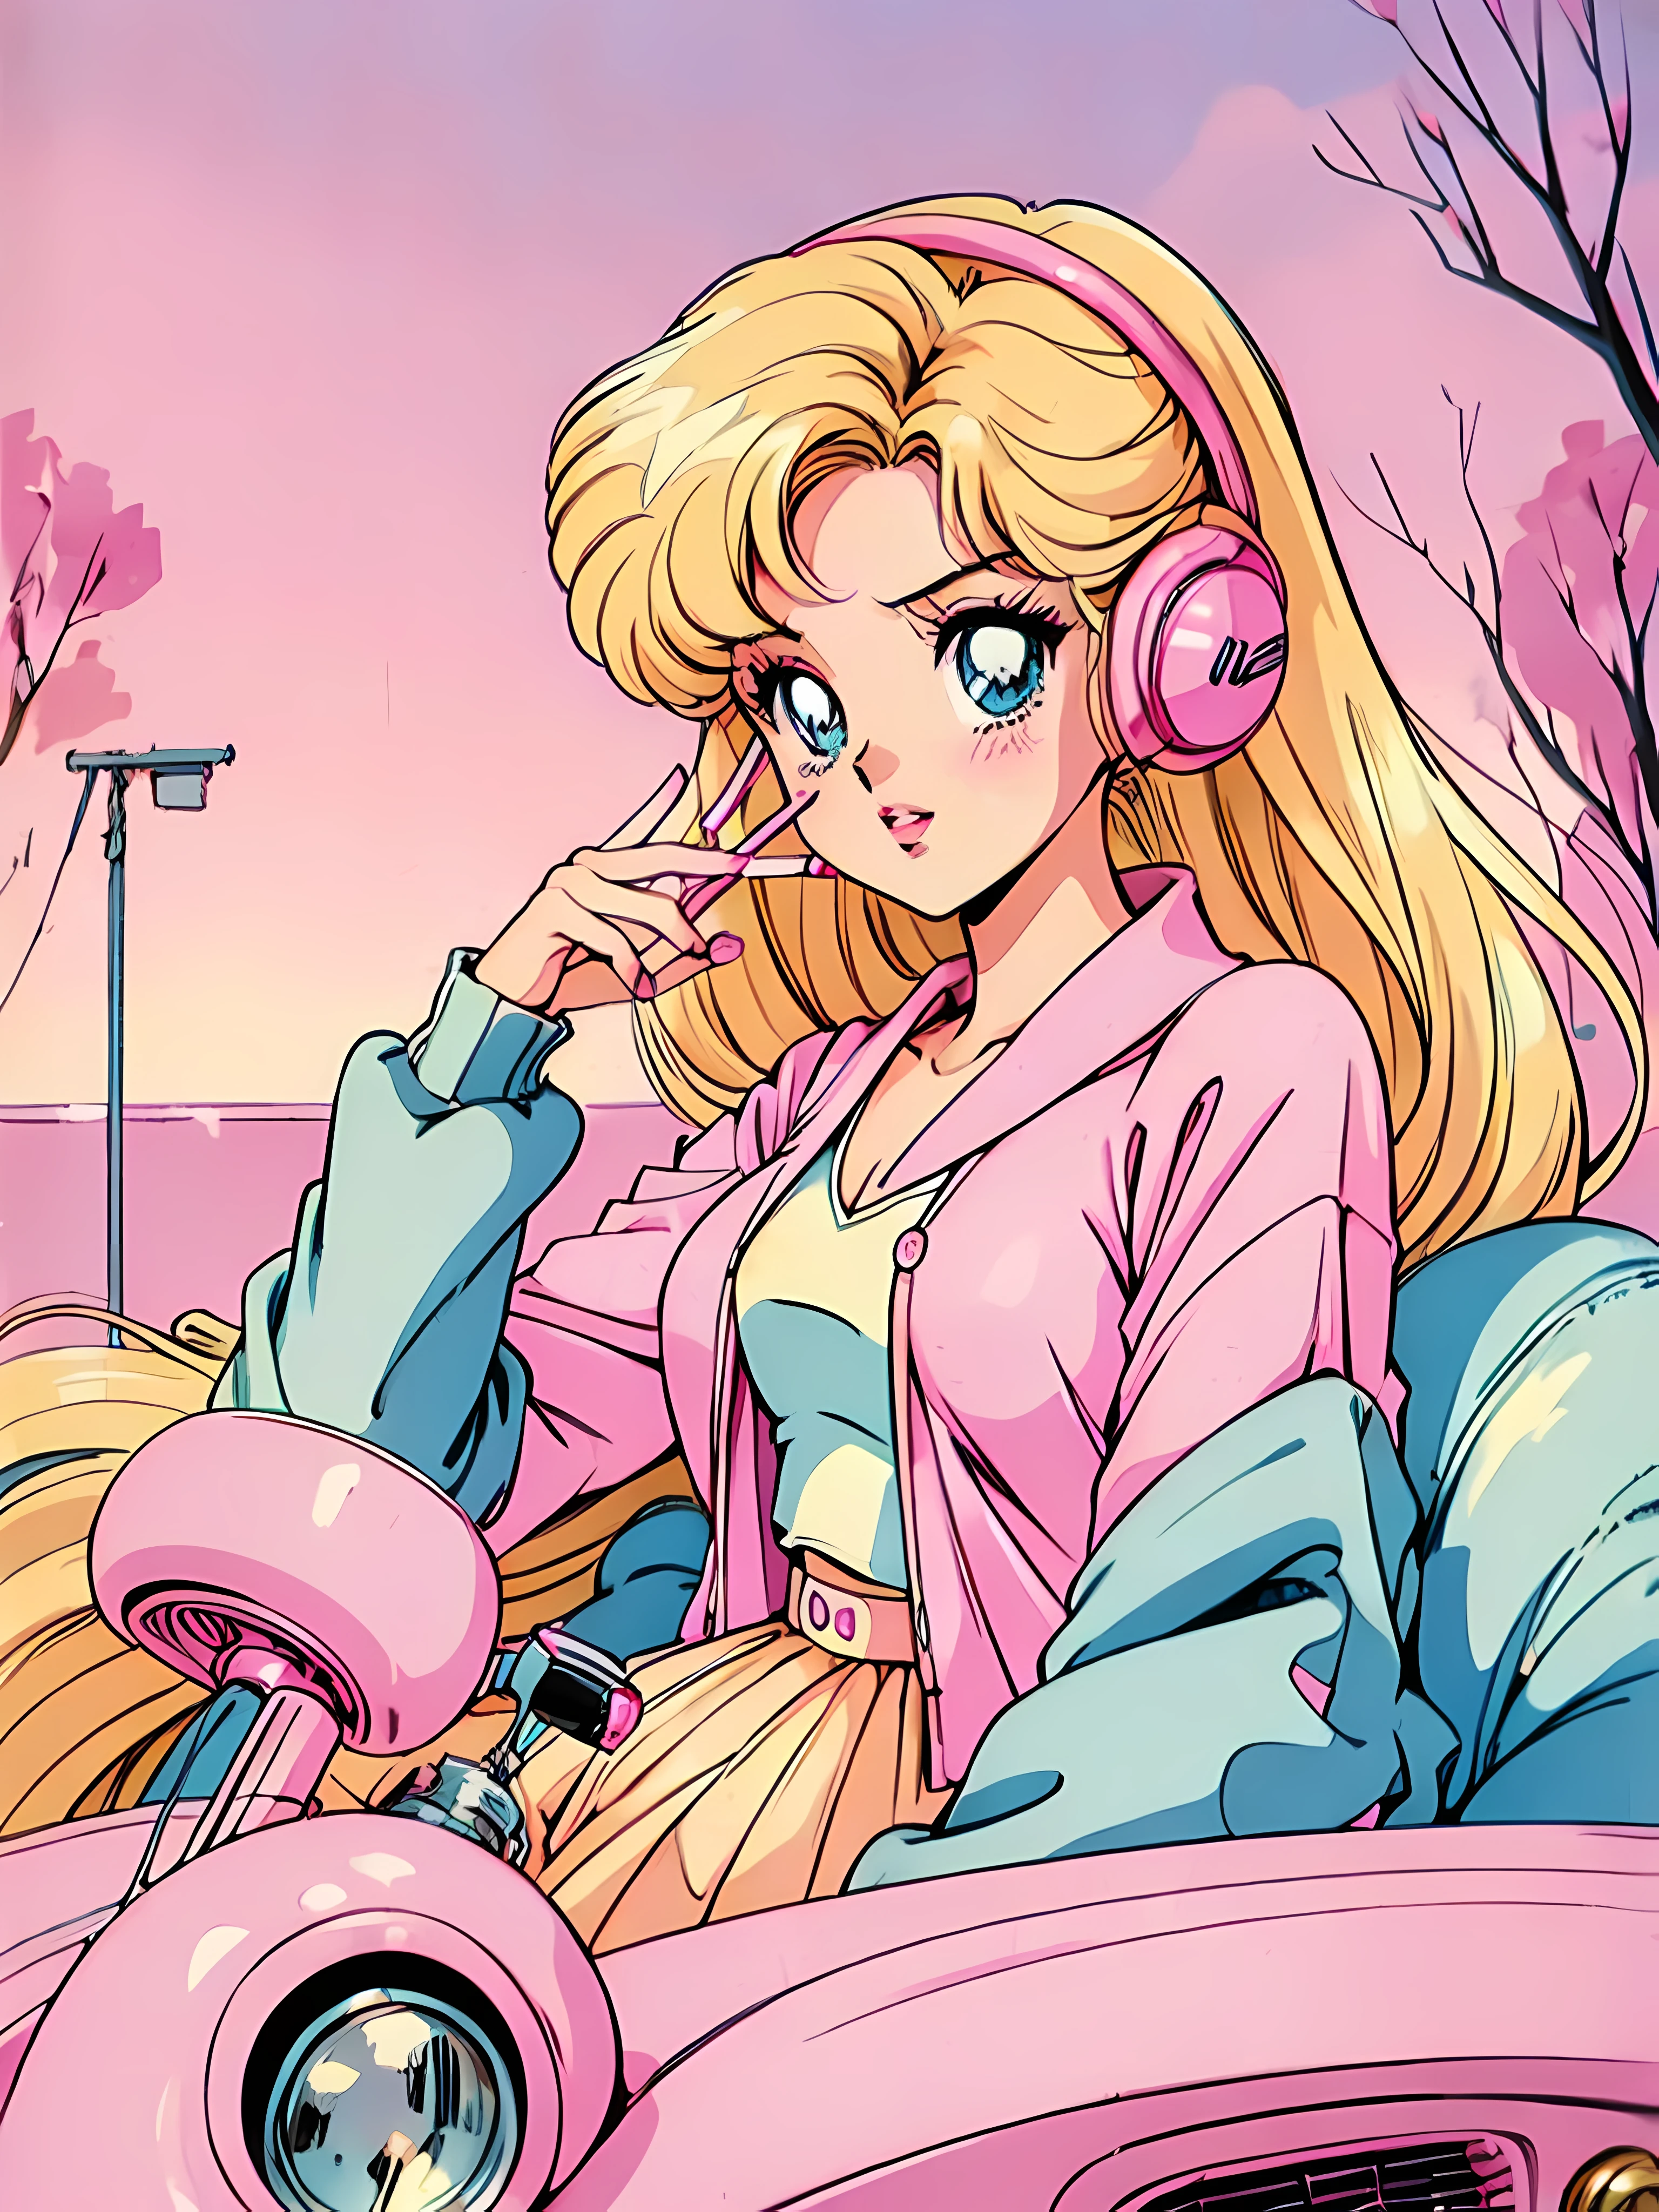 (금발 바비:1.2),(핑크 의상:1.1),(빈티지 90년대:1.1),(로맨스 애니메이션 스타일:1.3), 핑크색 차에 앉아, 핑크 가디건, 흑발, 립글로스, 담배